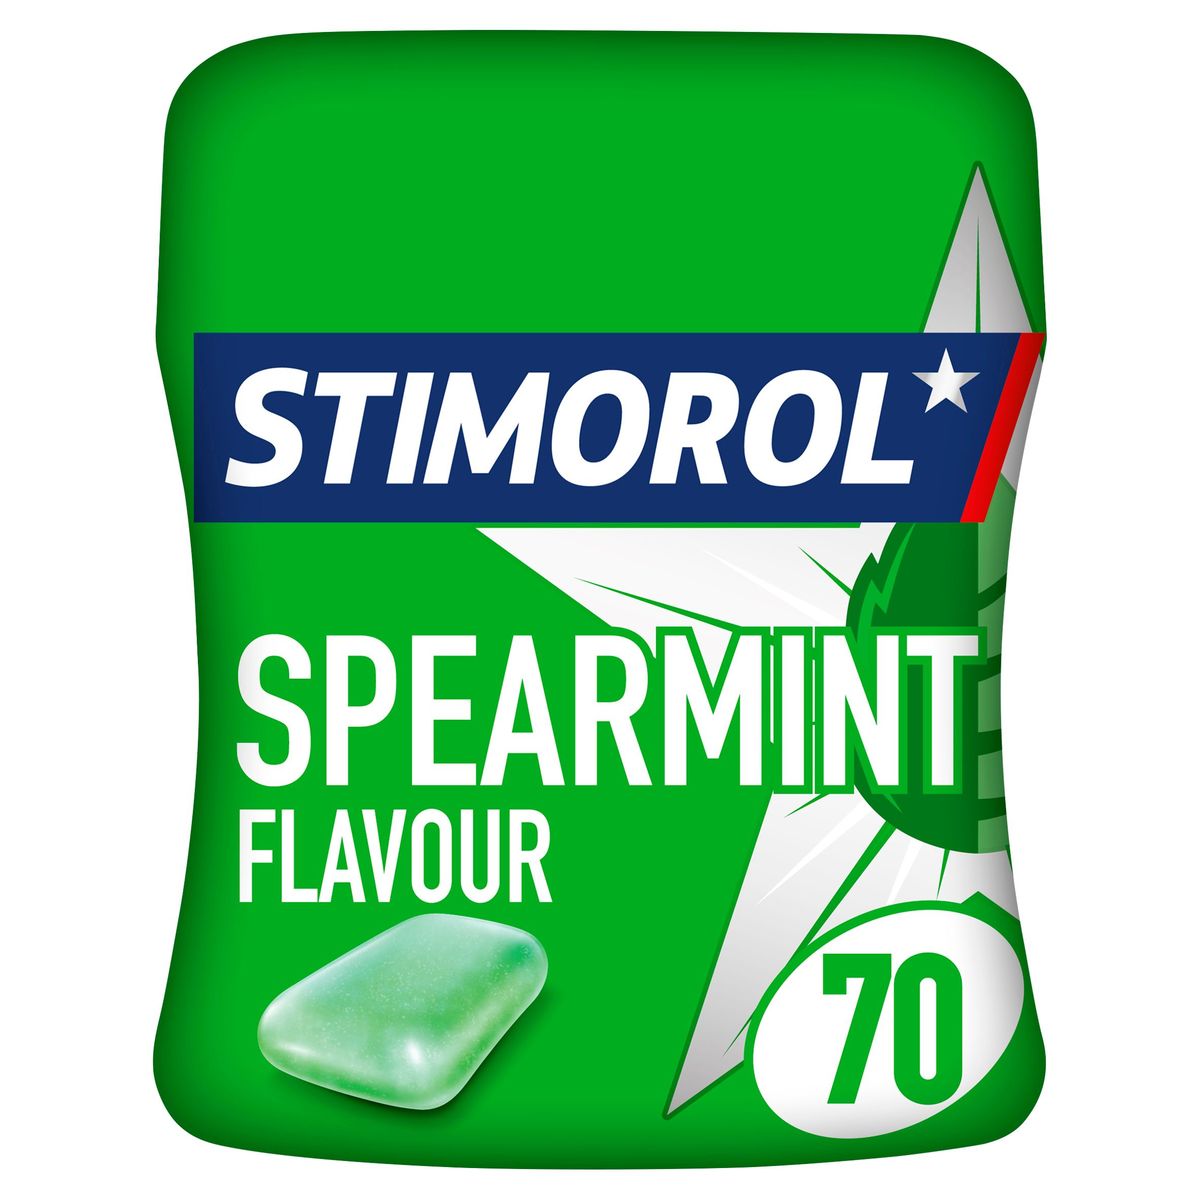 Stimorol Chewing-gum Spearmint Sans Sucre Pot 70 Pcs